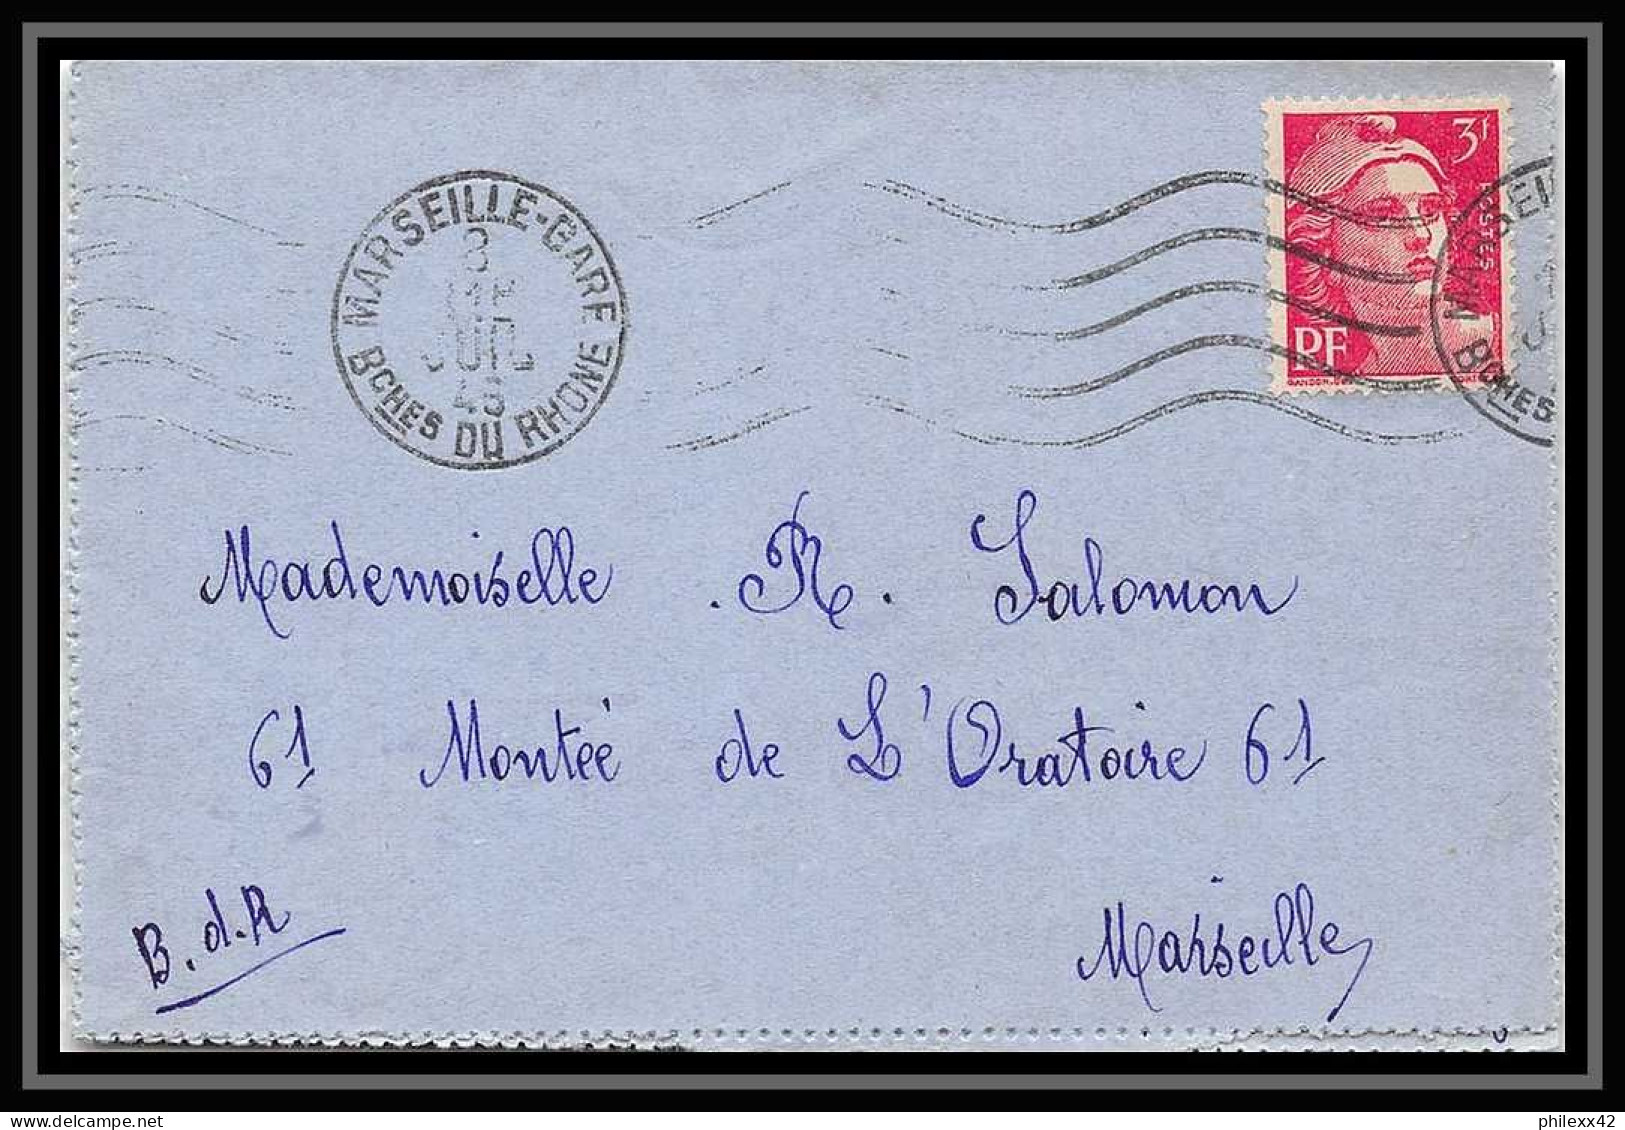 109401 lot de 31 Lettres Bouches du rhone Marseille Gare ferroviaire "